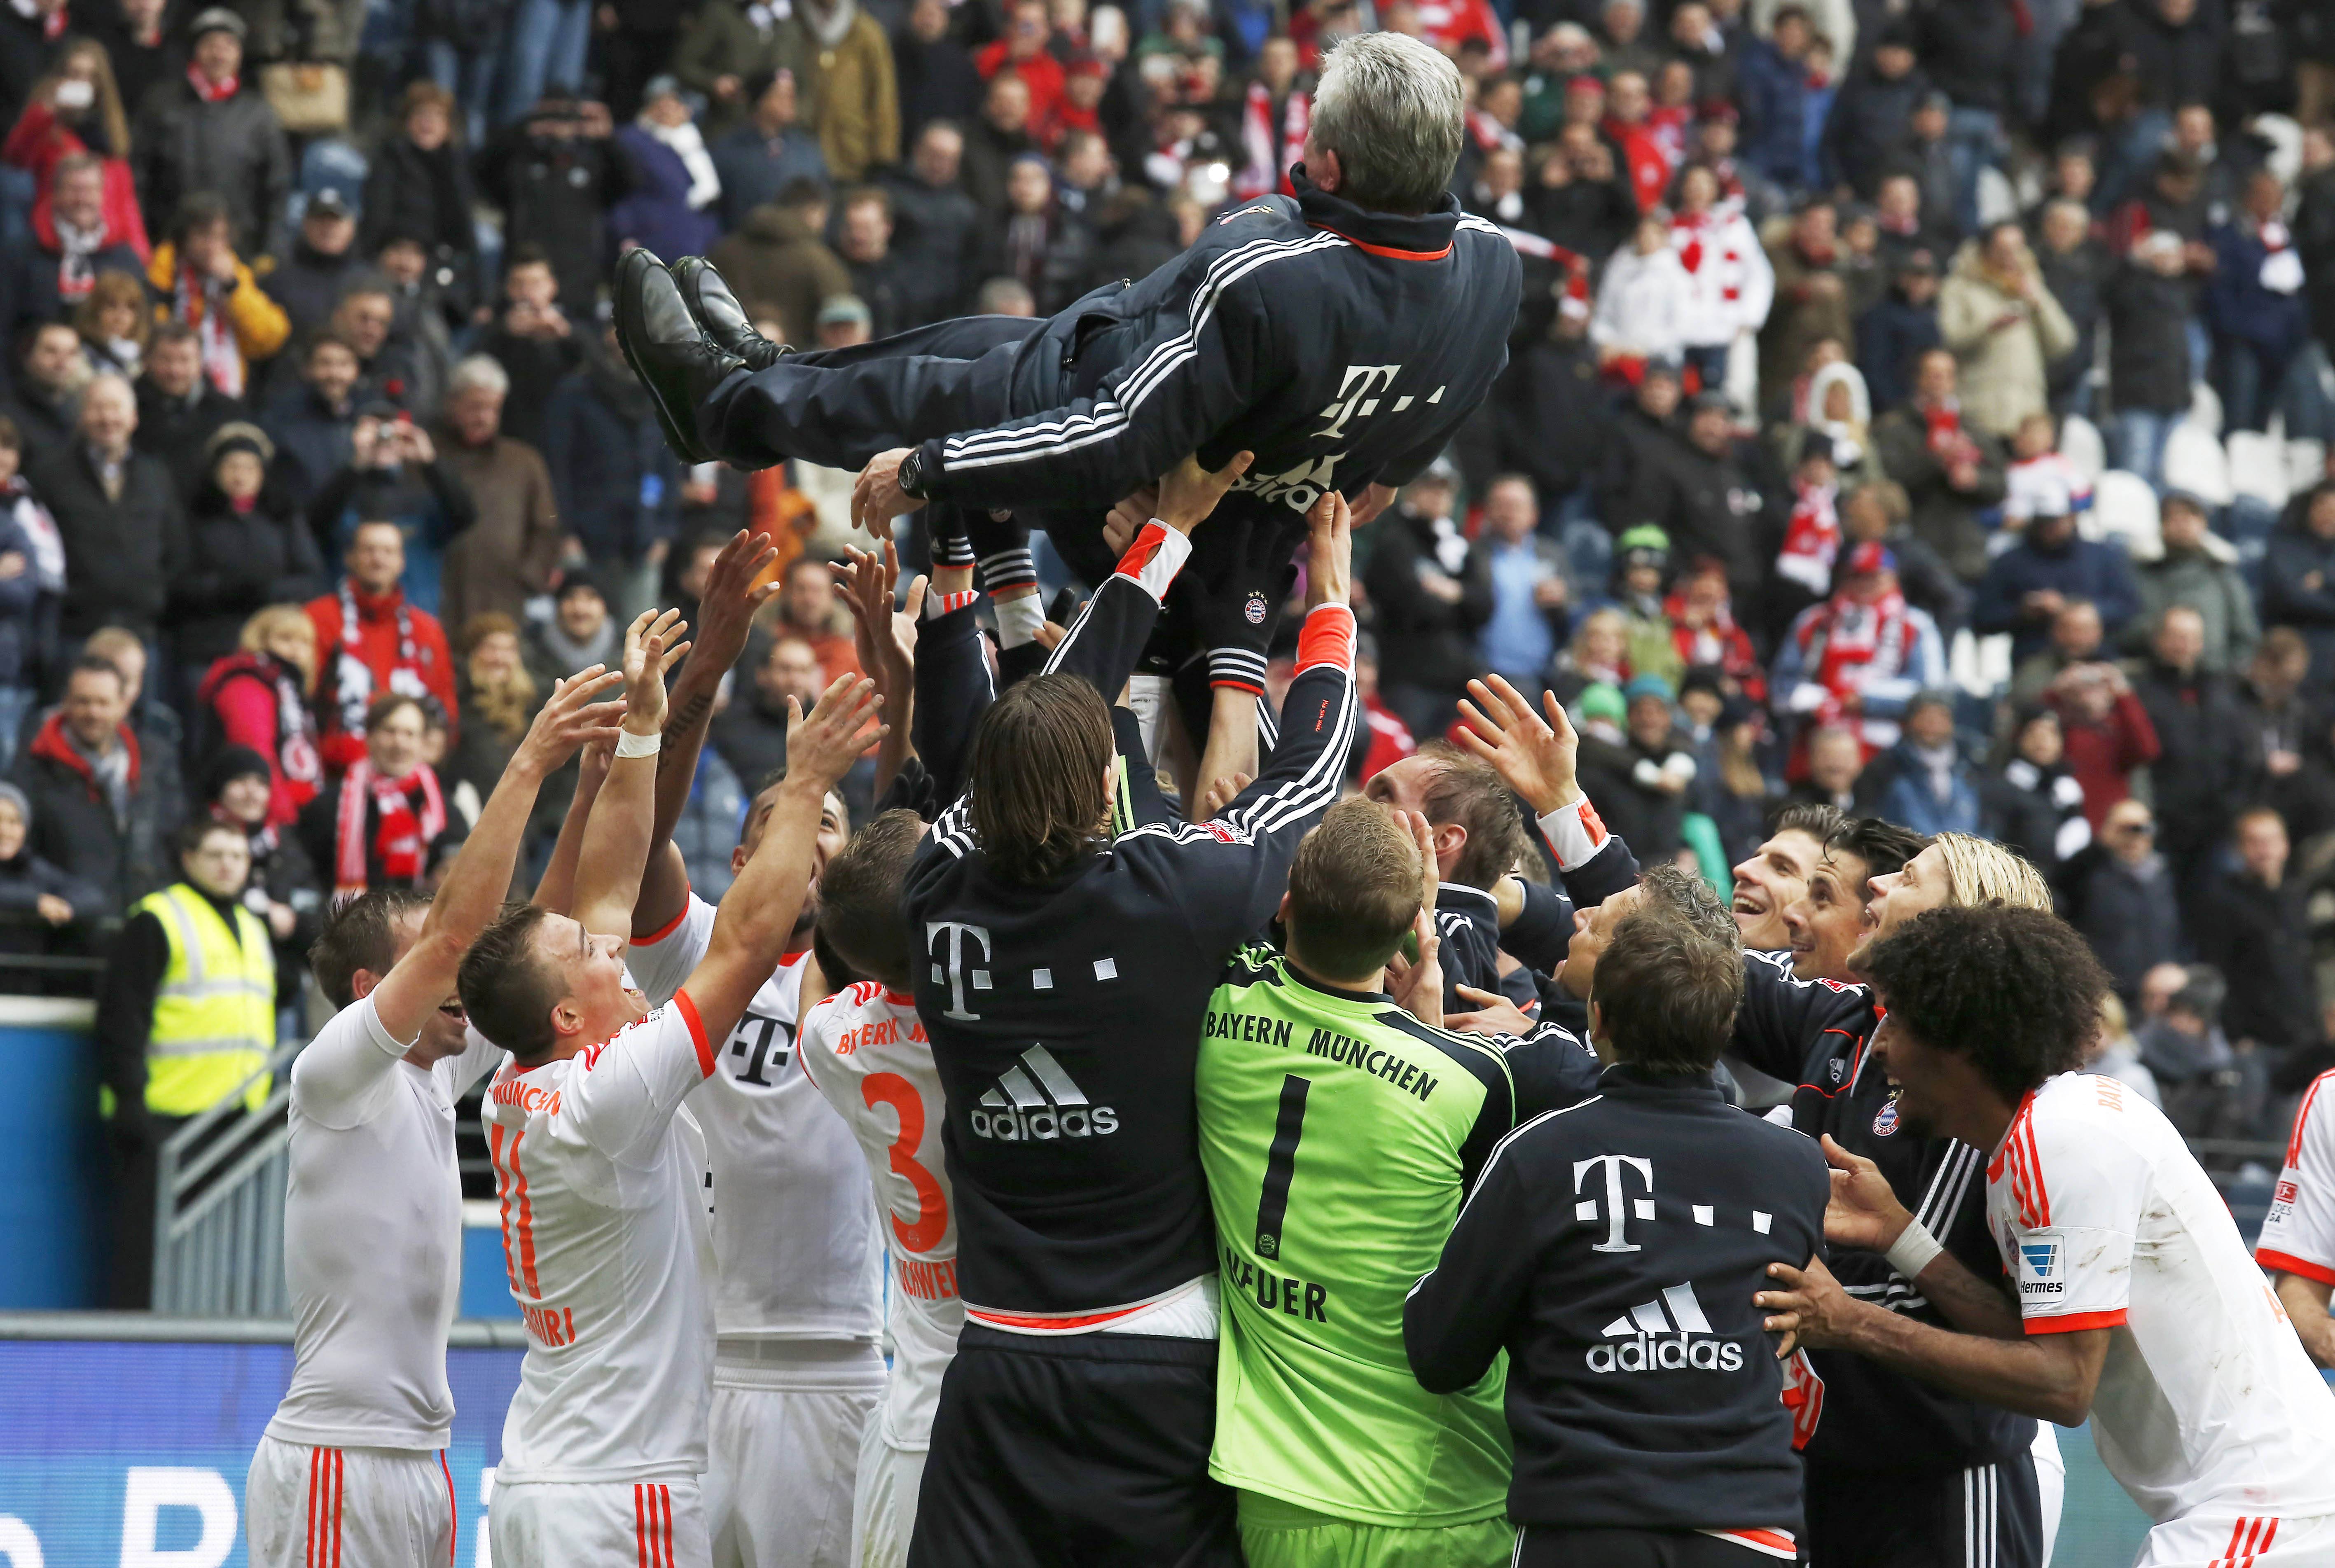 Bewertung: Den Titel gab es schon eine Woche nach Ostern, doch Ostern 2013 war schon im März. Einziger Wermutstropfen dieser fast perfekten Saison: Bayern konnte keins seiner Spiele gegen den BVB gewinnen.